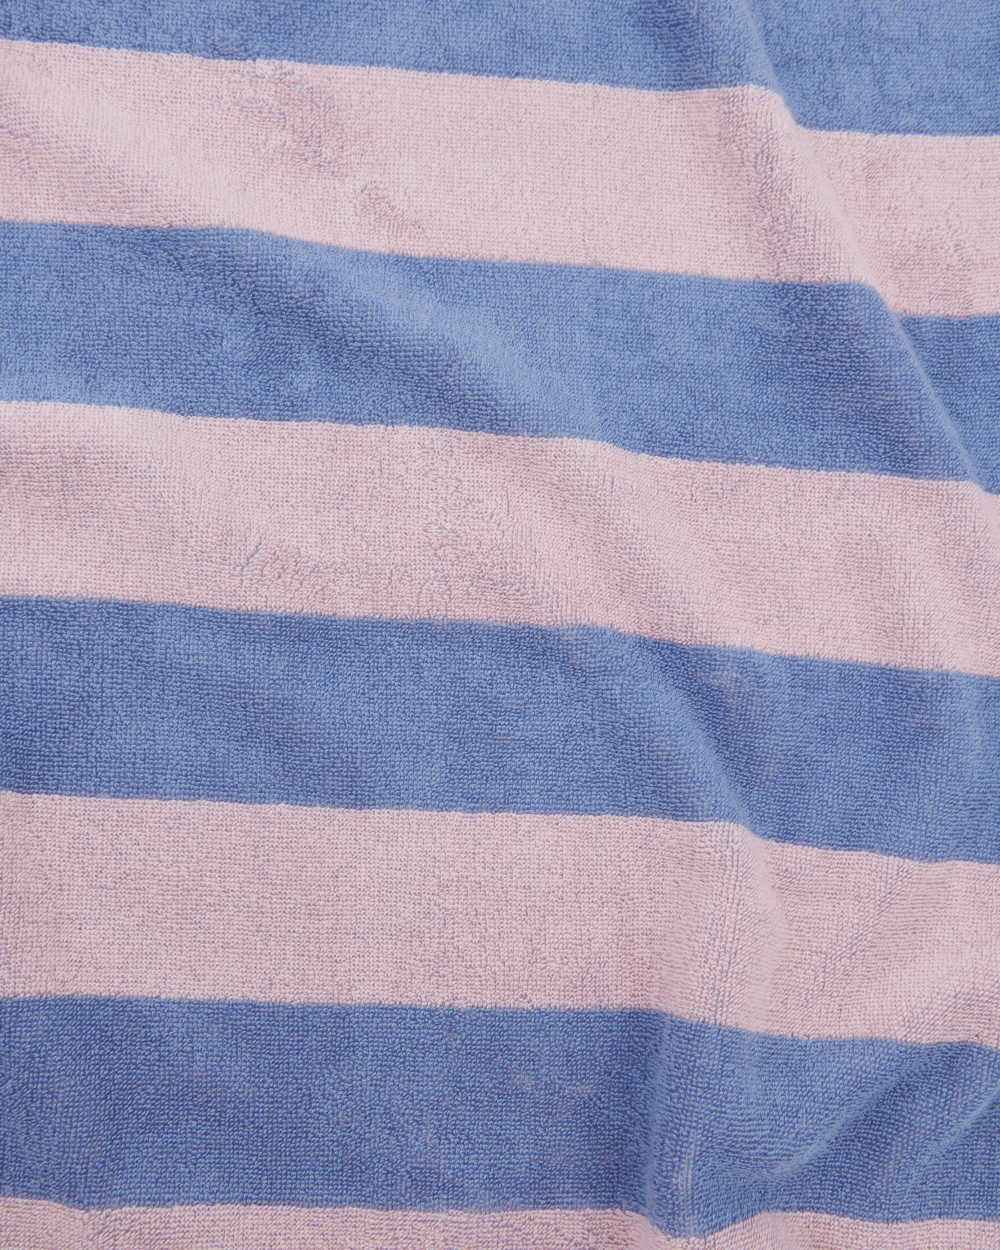 Beach towels | Tekla Fabrics